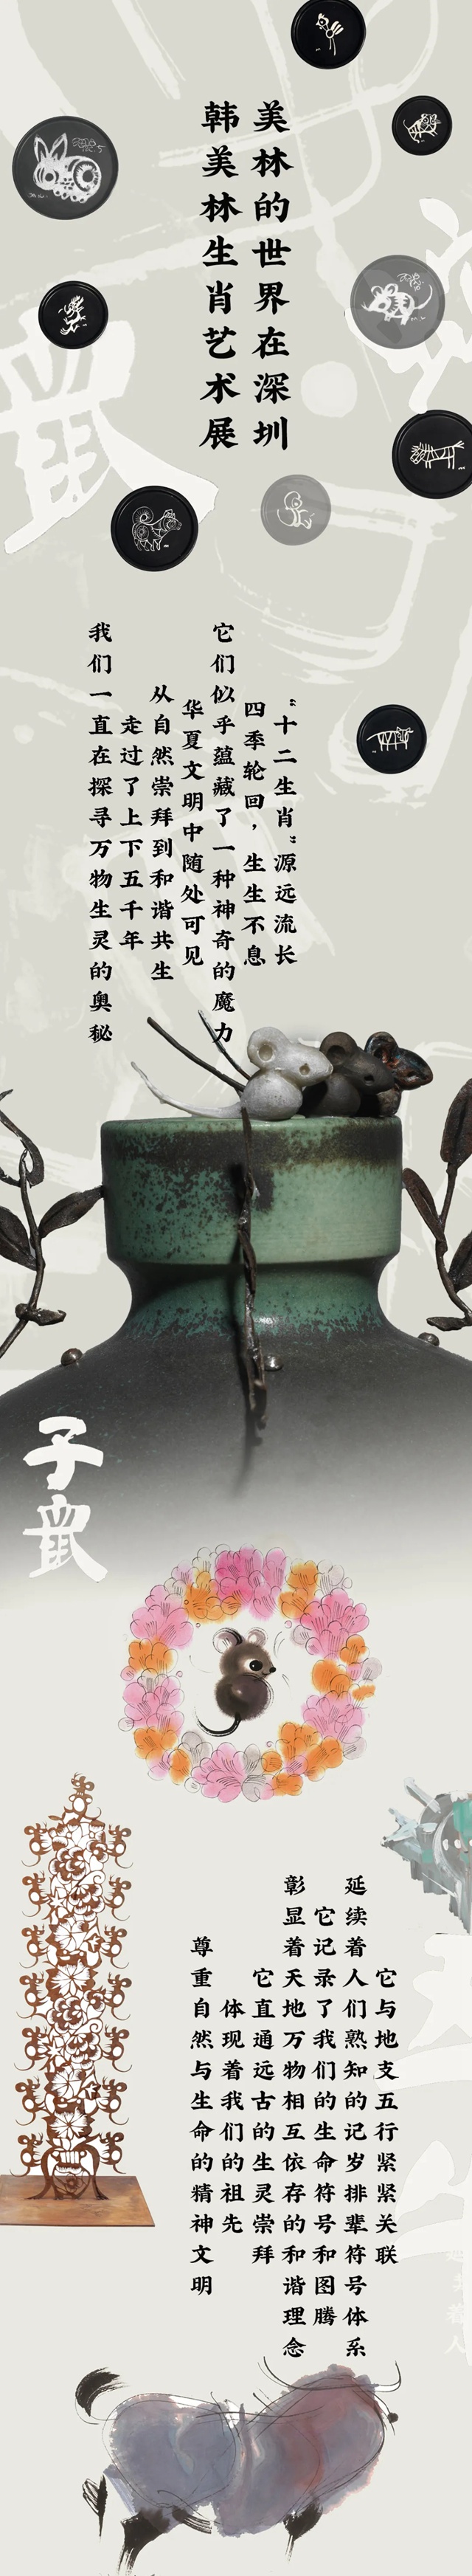 【新展预告】美林的世界在深圳——韩美林生肖艺术展